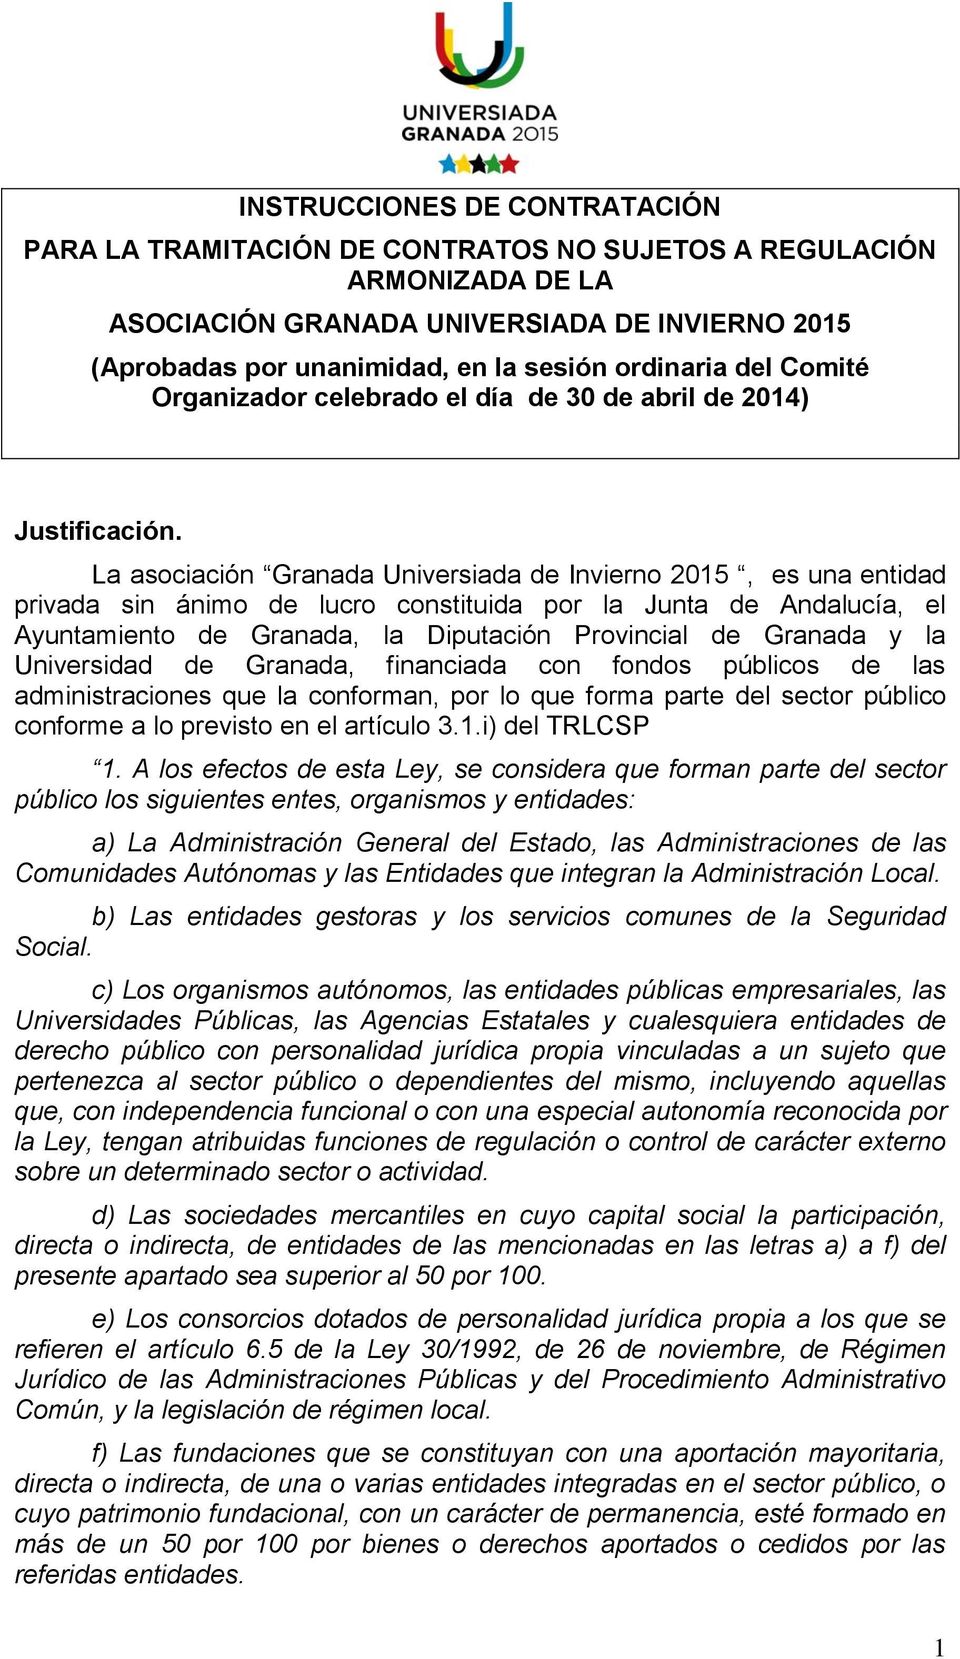 La asociación Granada Universiada de Invierno 2015, es una entidad privada sin ánimo de lucro constituida por la Junta de Andalucía, el Ayuntamiento de Granada, la Diputación Provincial de Granada y